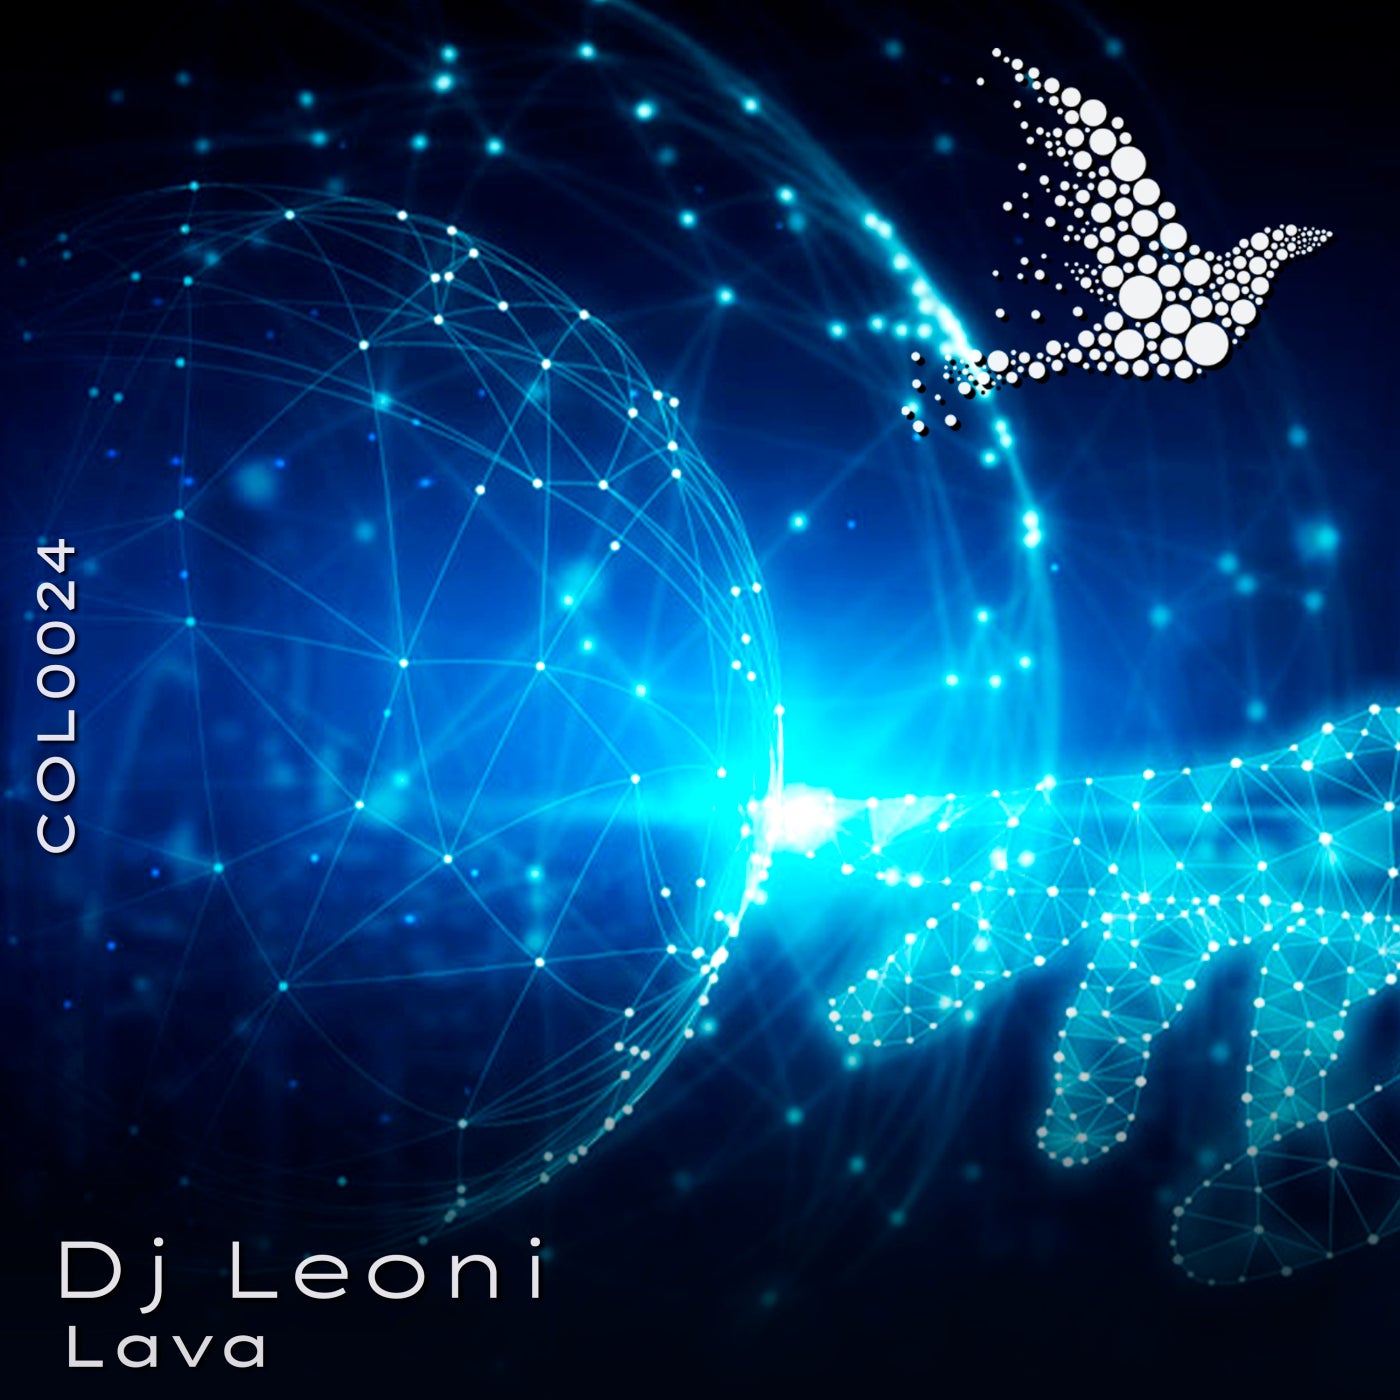 DJ Leoni - Lava [Colorica]